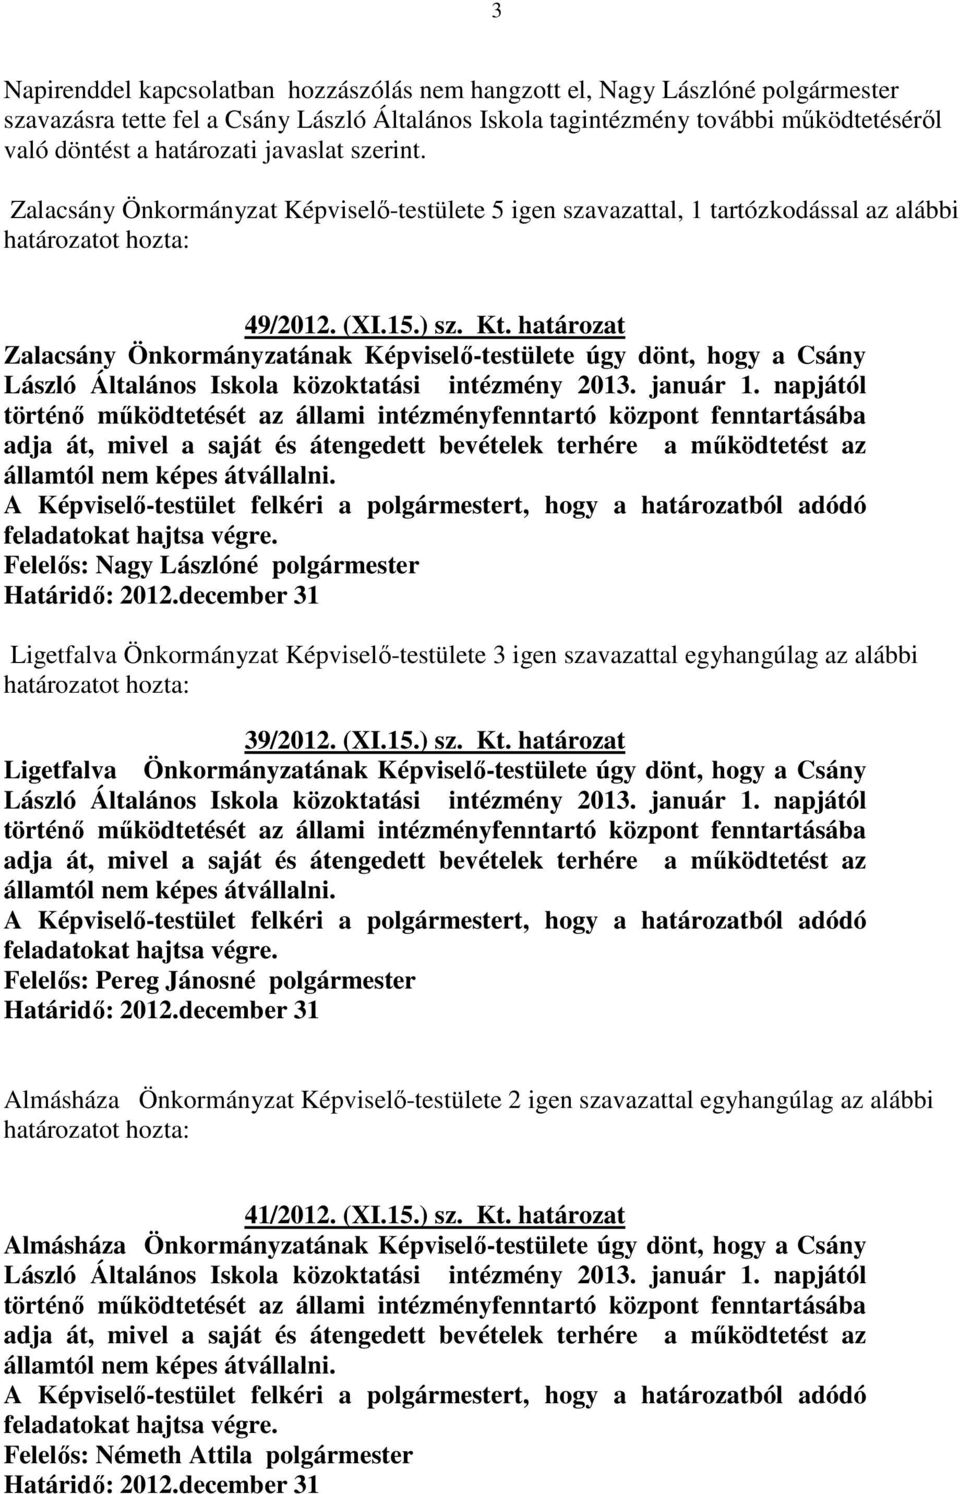 határozat Zalacsány Önkormányzatának Képviselő-testülete úgy dönt, hogy a Csány László Általános Iskola közoktatási intézmény 2013. január 1.